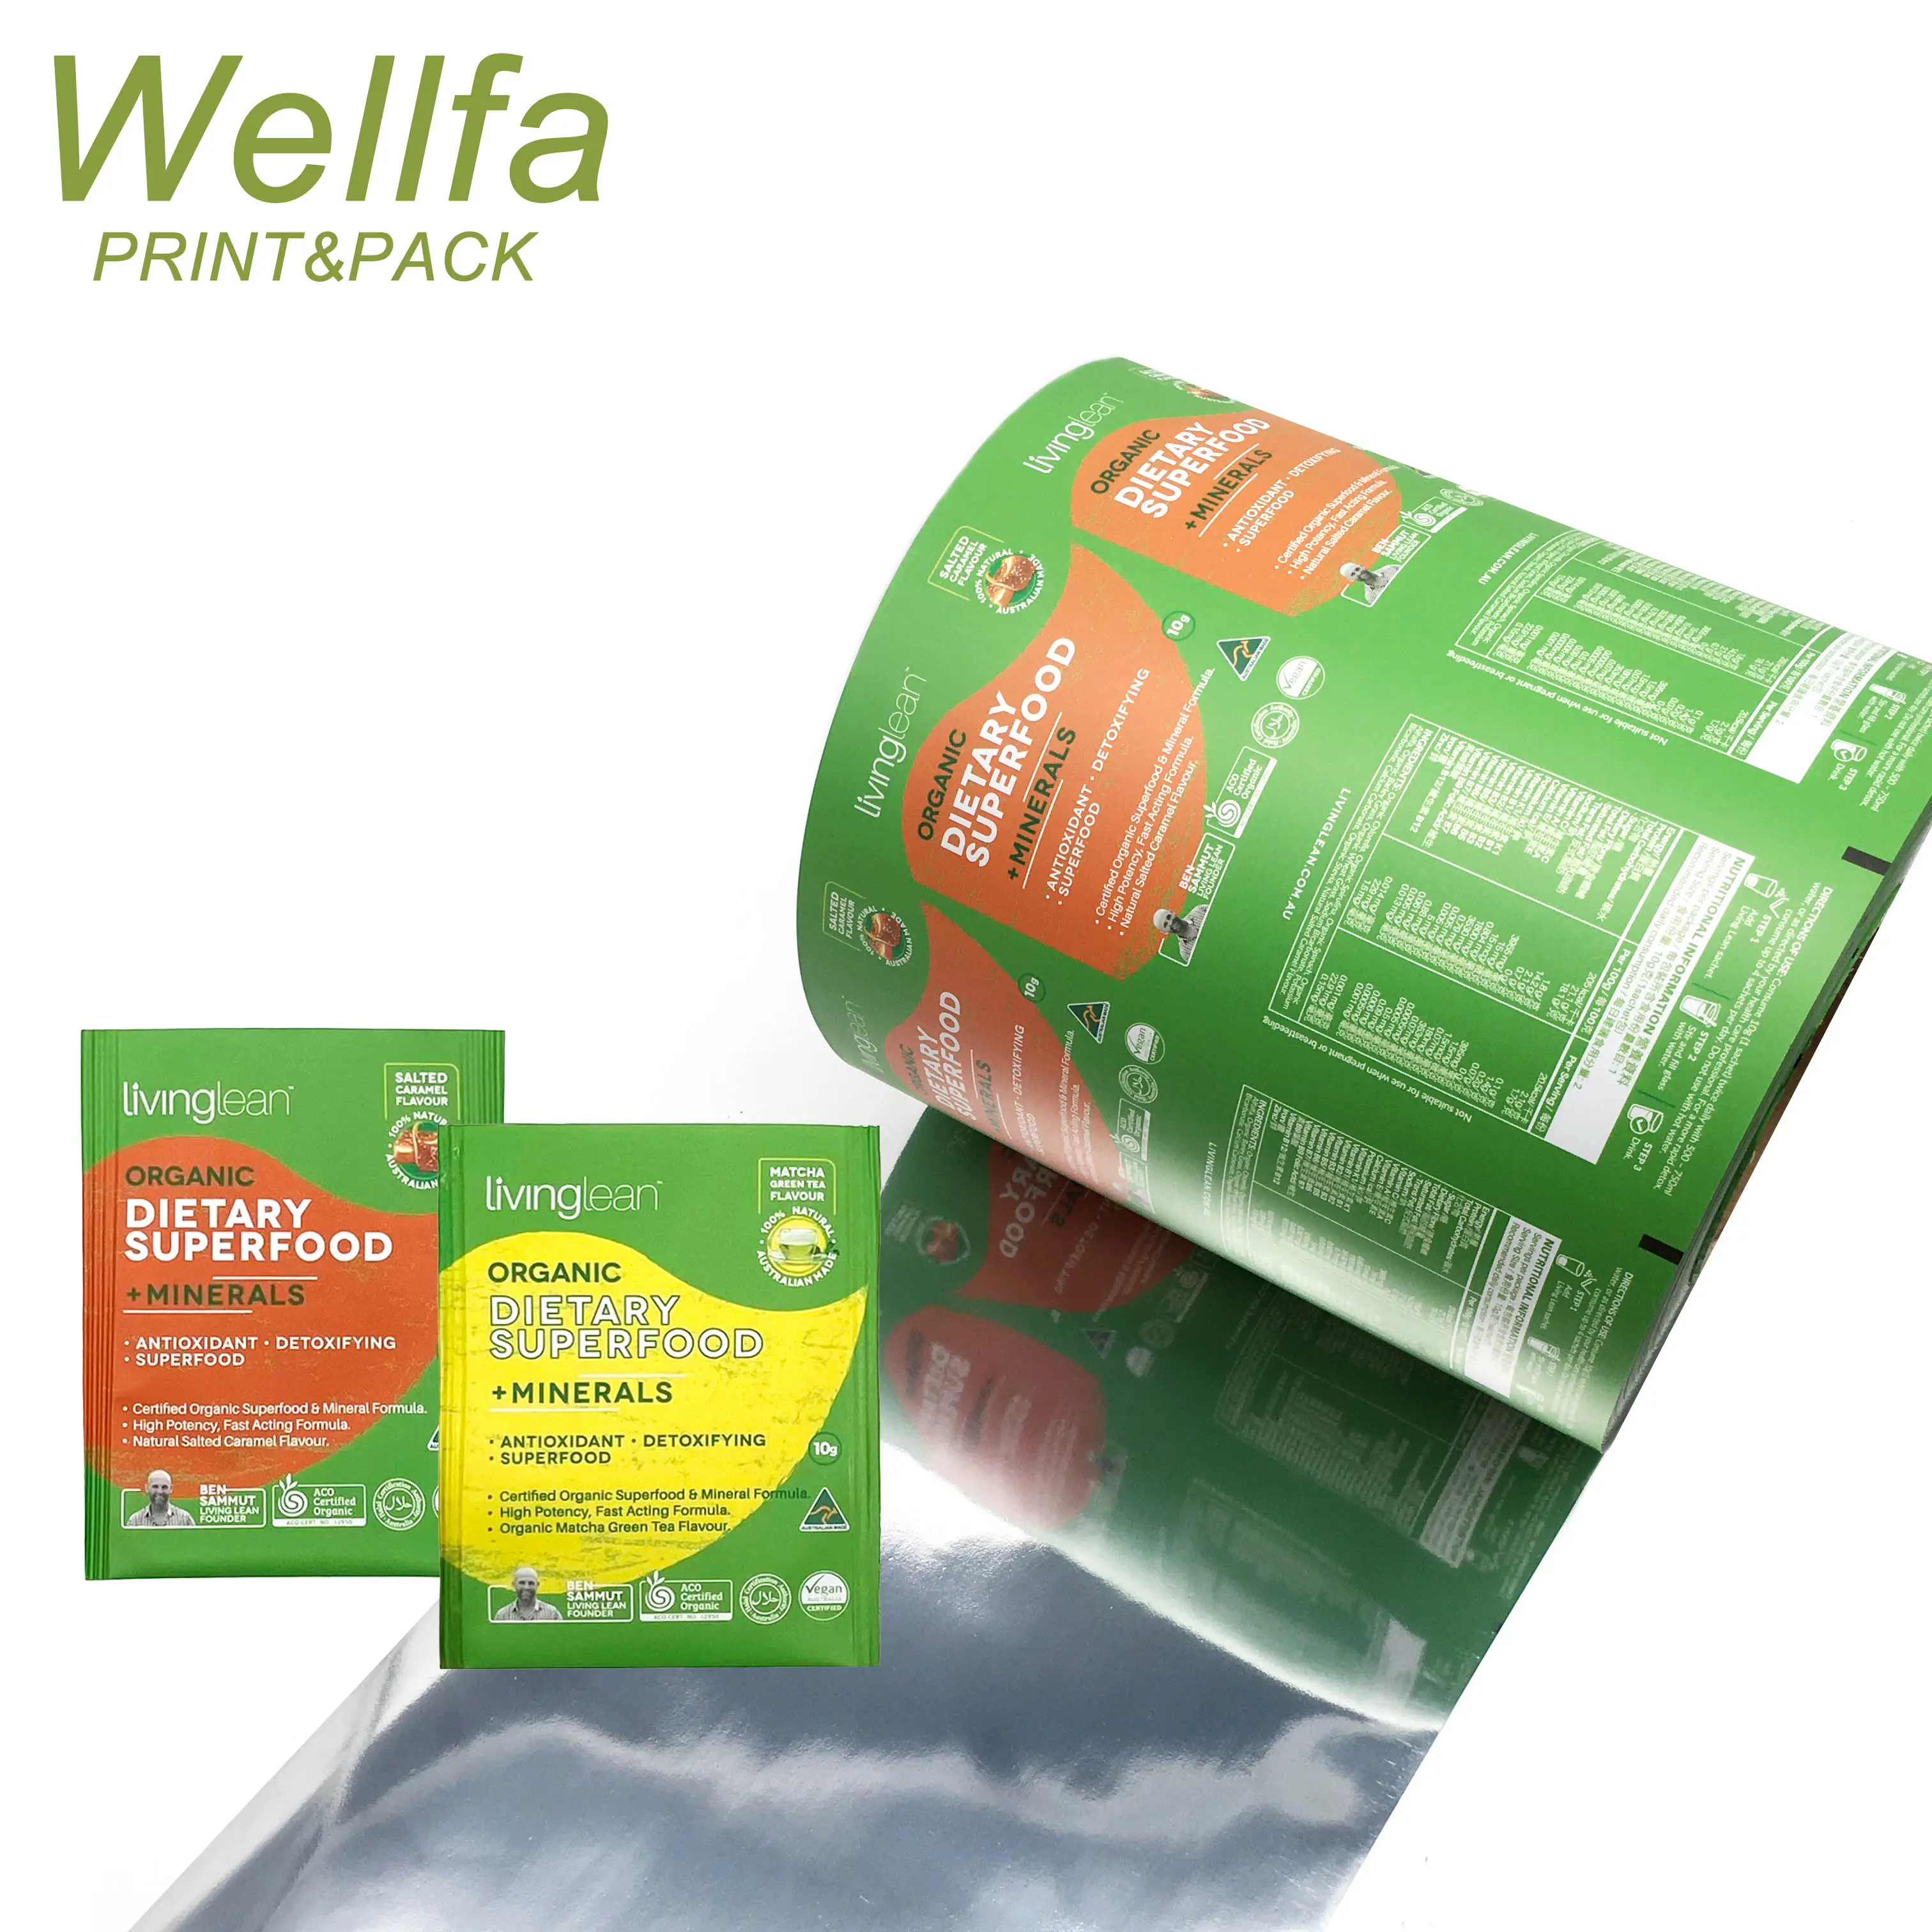 Rolo de filme para embalagem de chá PET VMPET, saquinho de plástico laminado com folha de alumínio e impressão personalizada, produto comestível